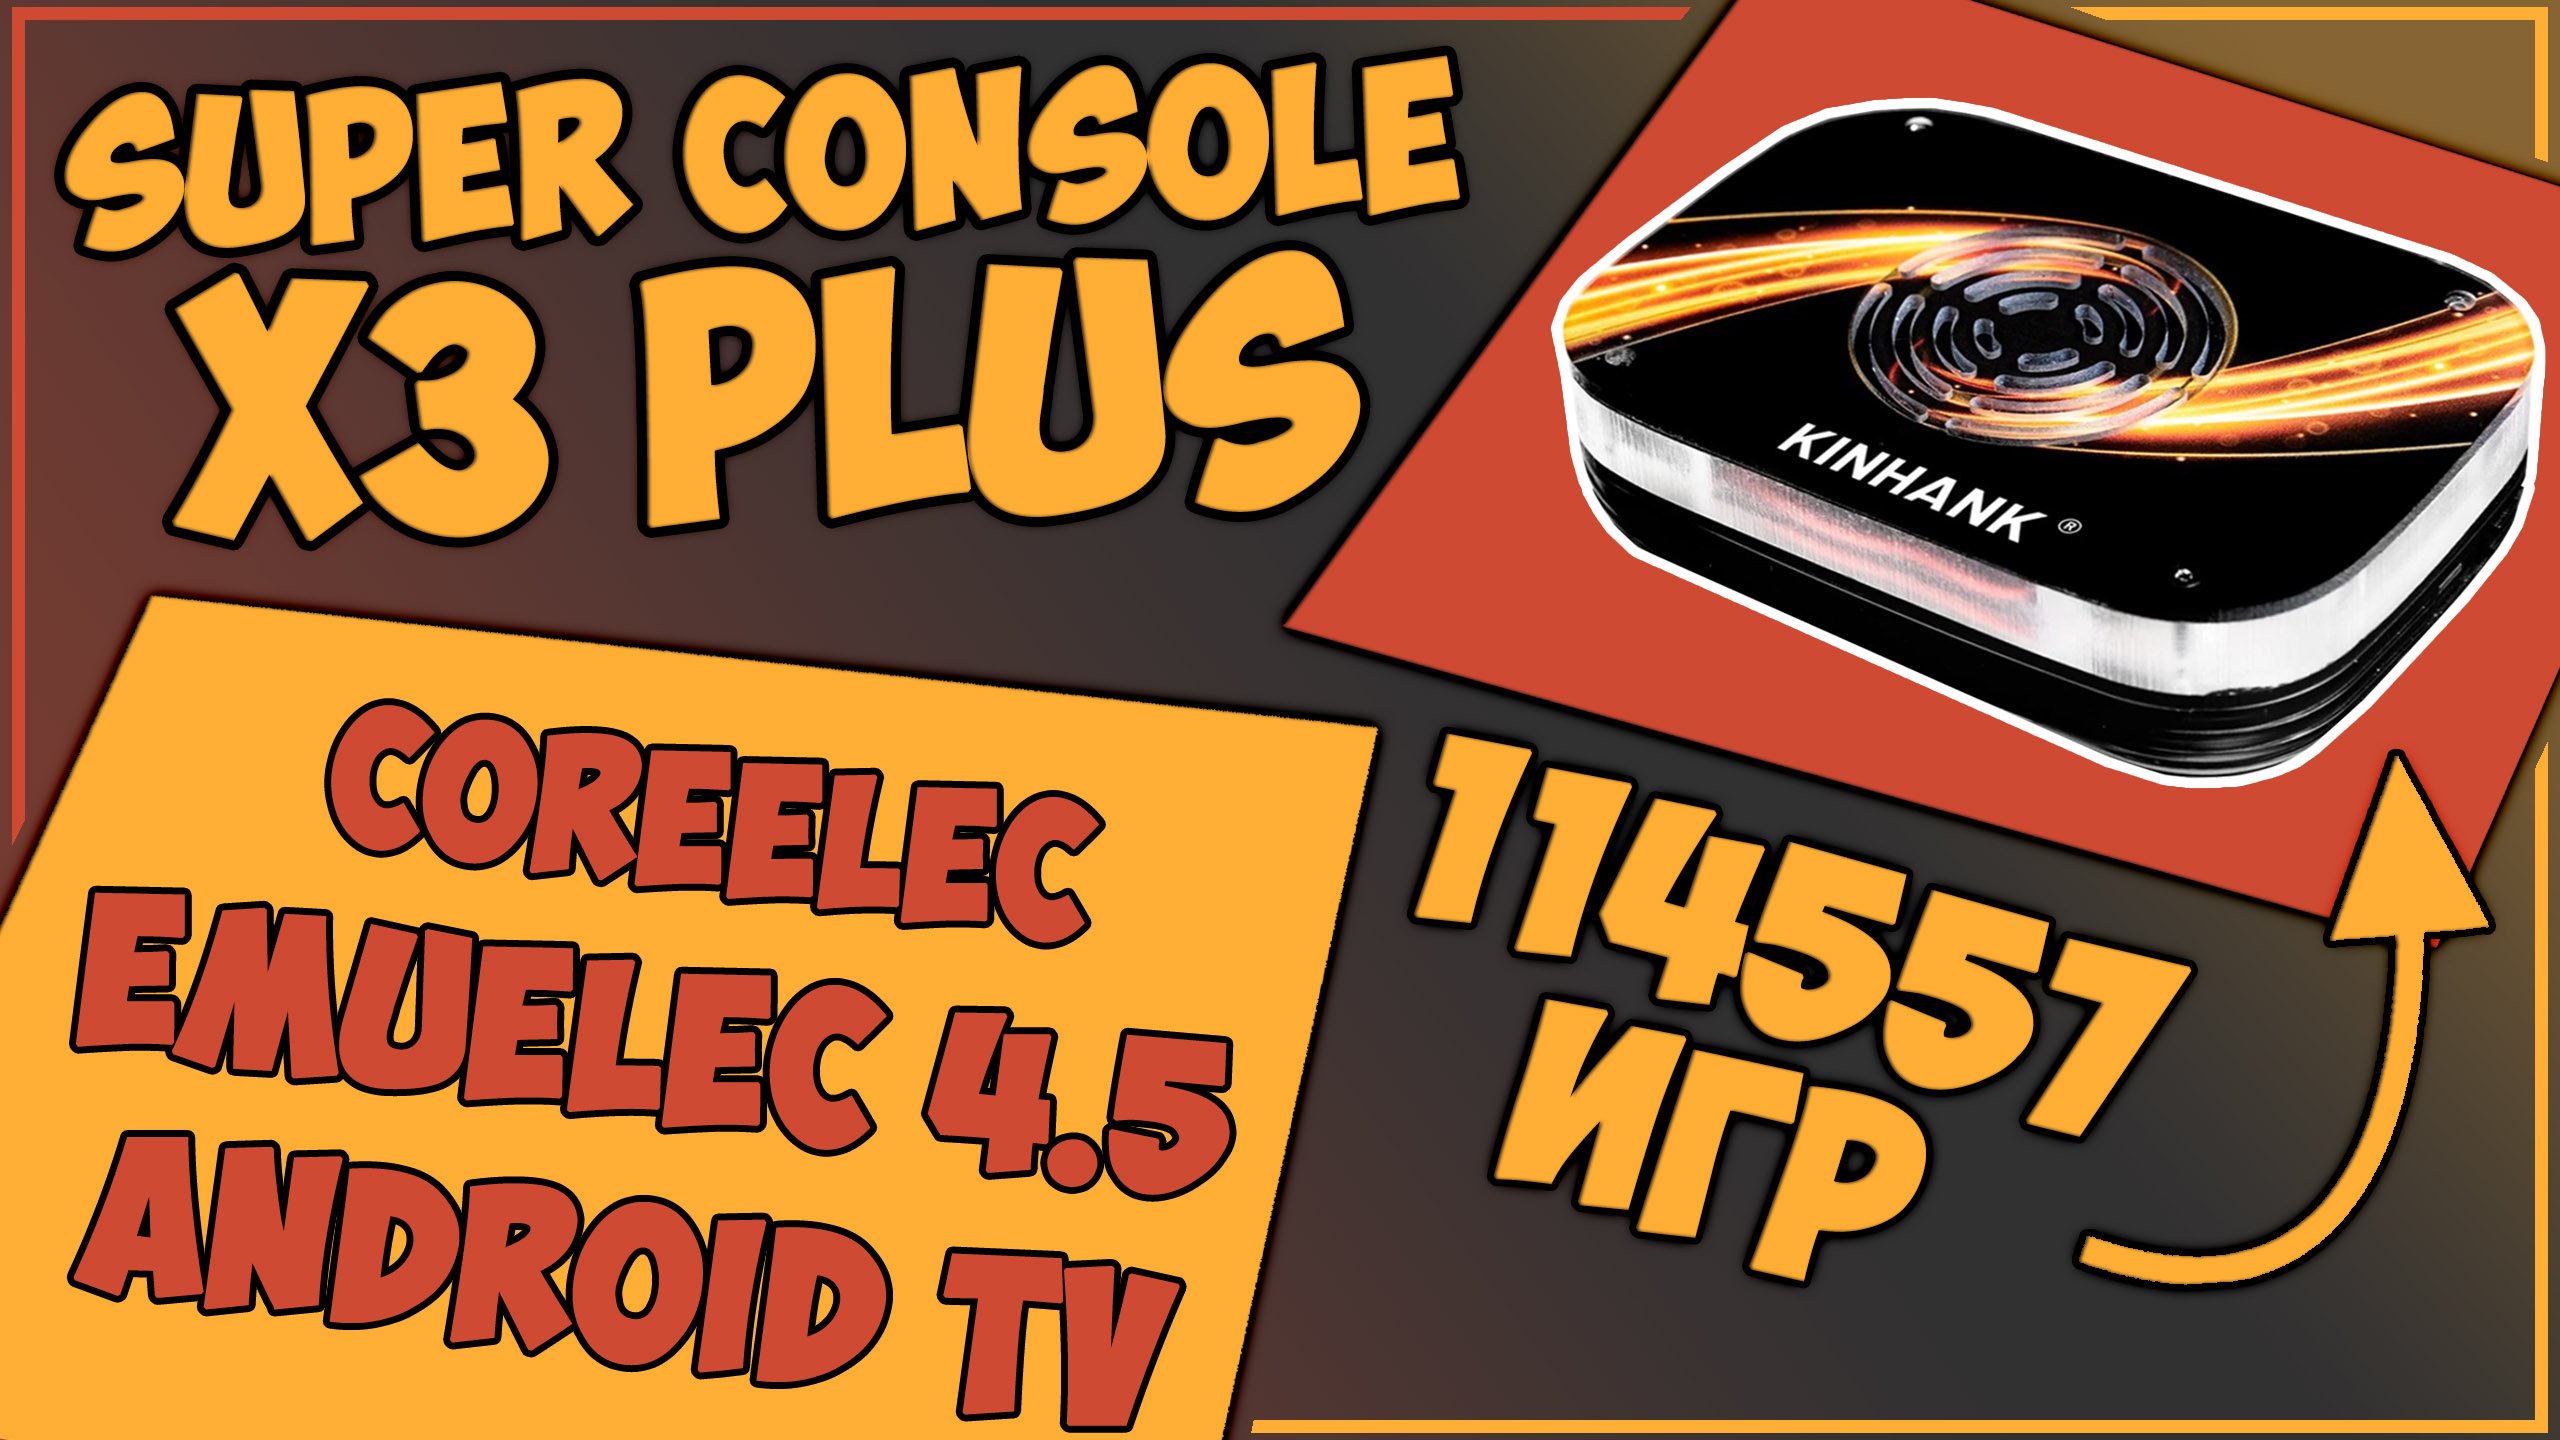 Super Console X3 Plus | 256GB | ЕЩЕ ЛУЧШЕ?! | EMUELEC 4.5! ??